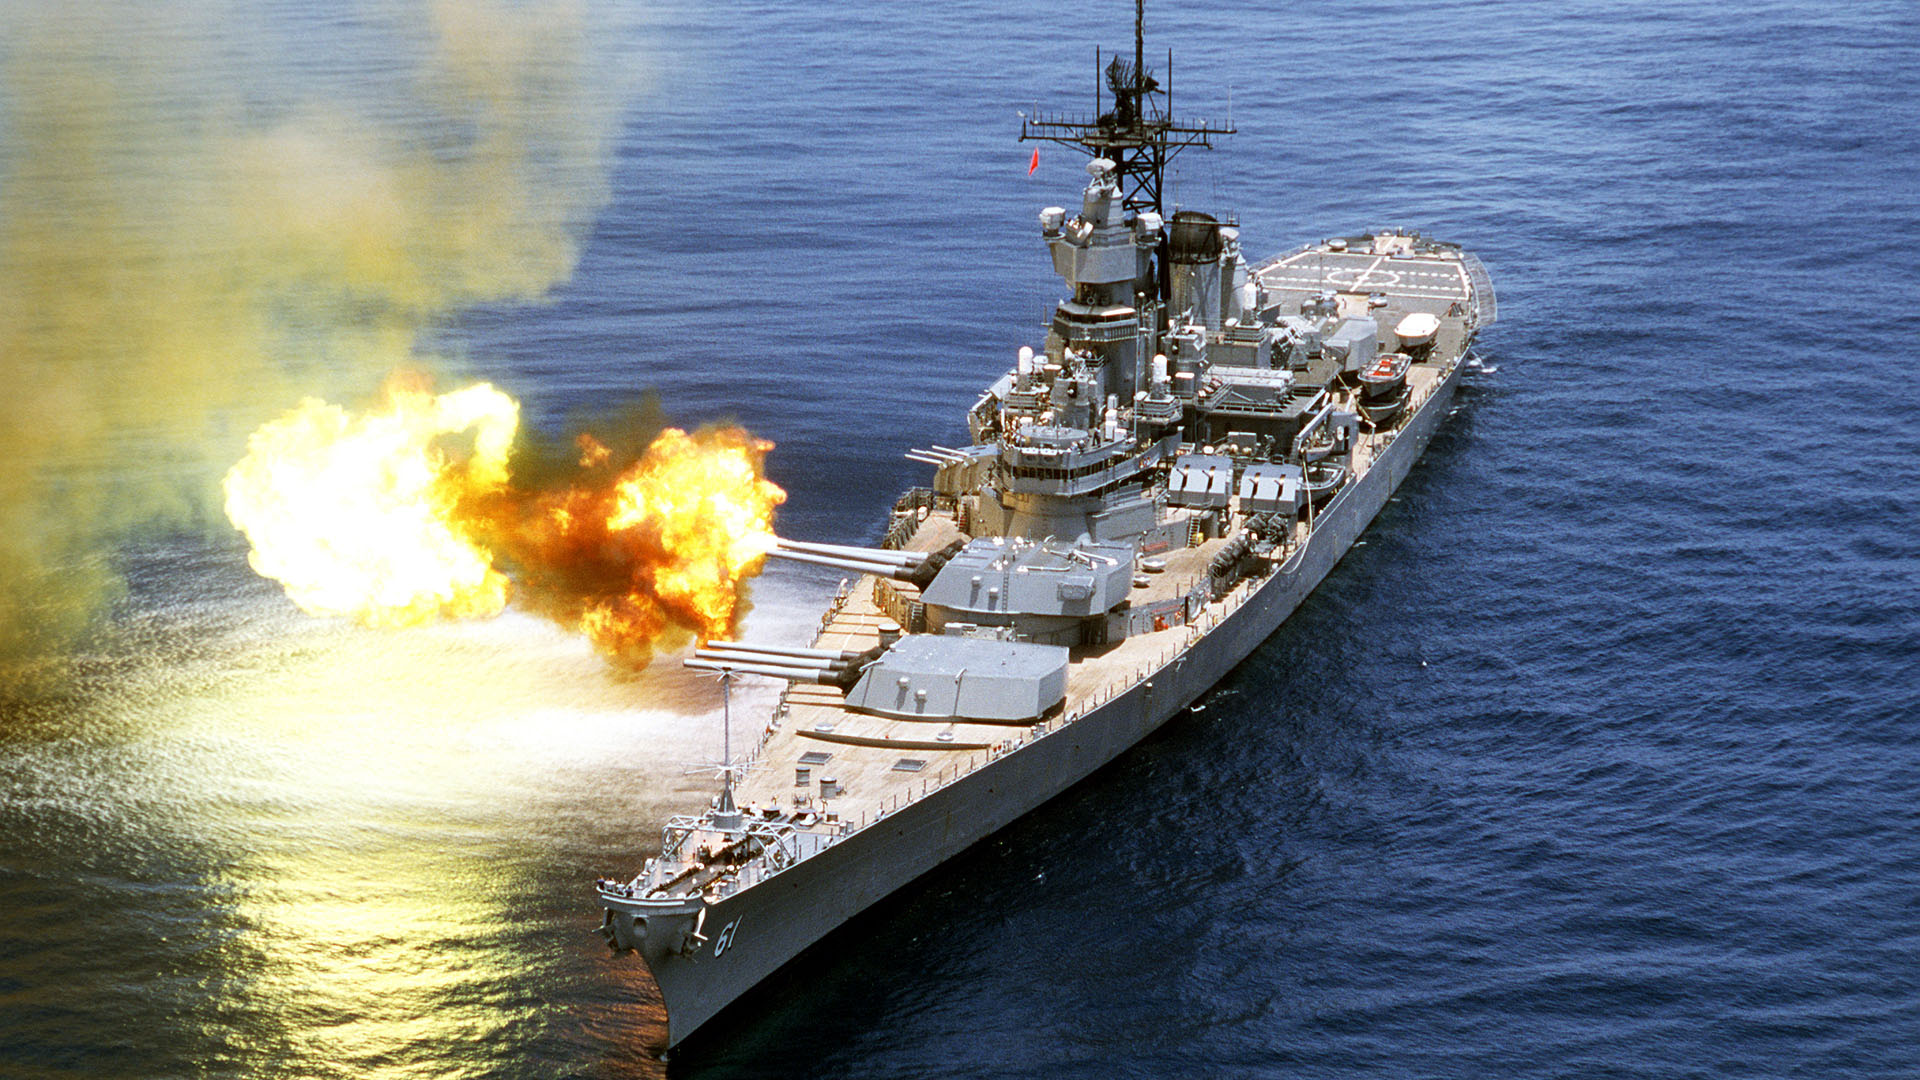 Uss Iowa Battle Battleship Fire Gun Guns Navy Design Desktop Wallpaper